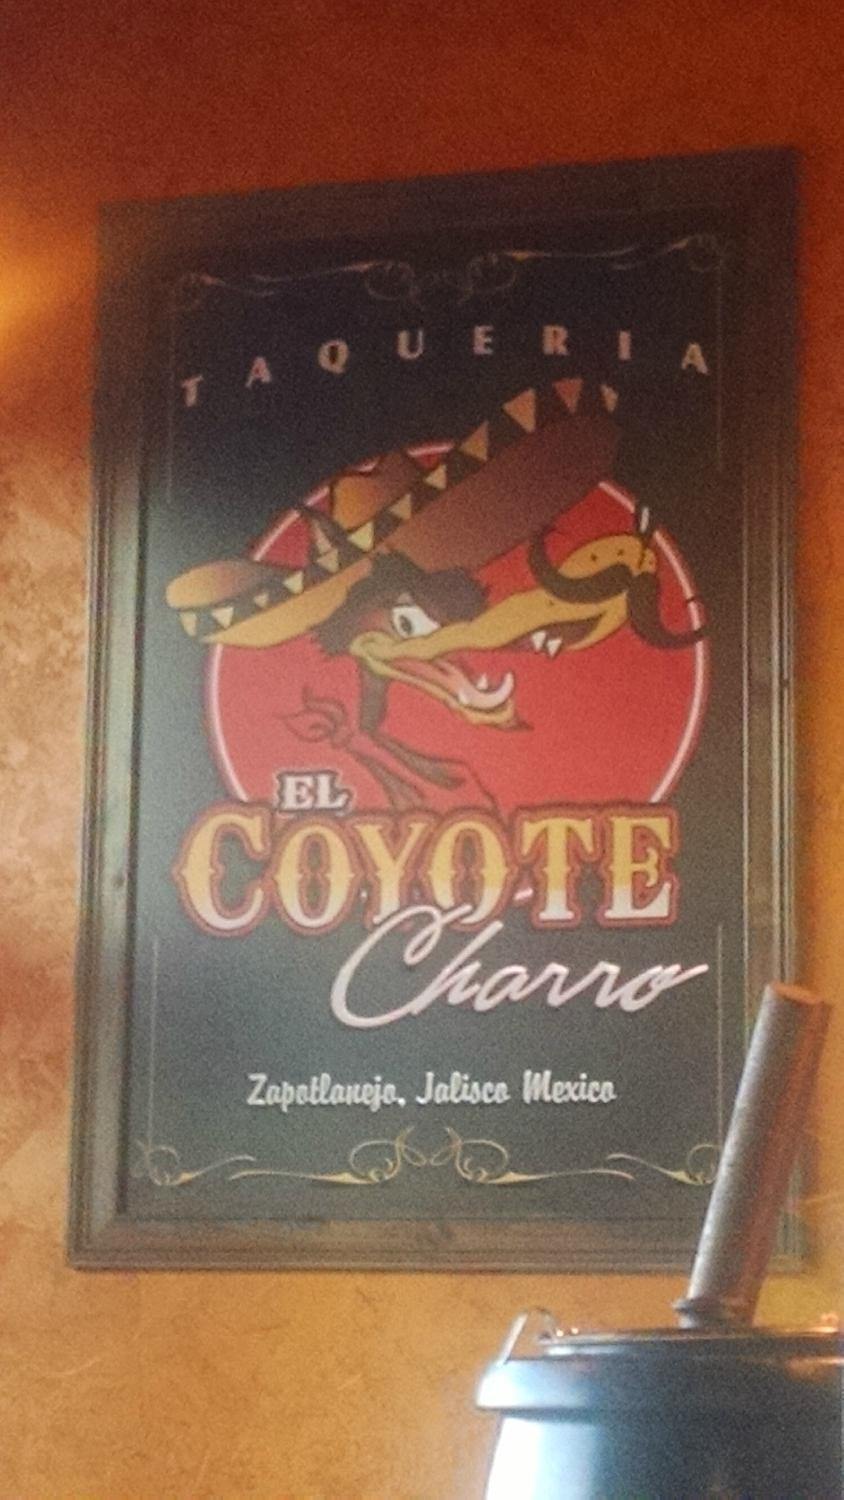 El Coyote Charro